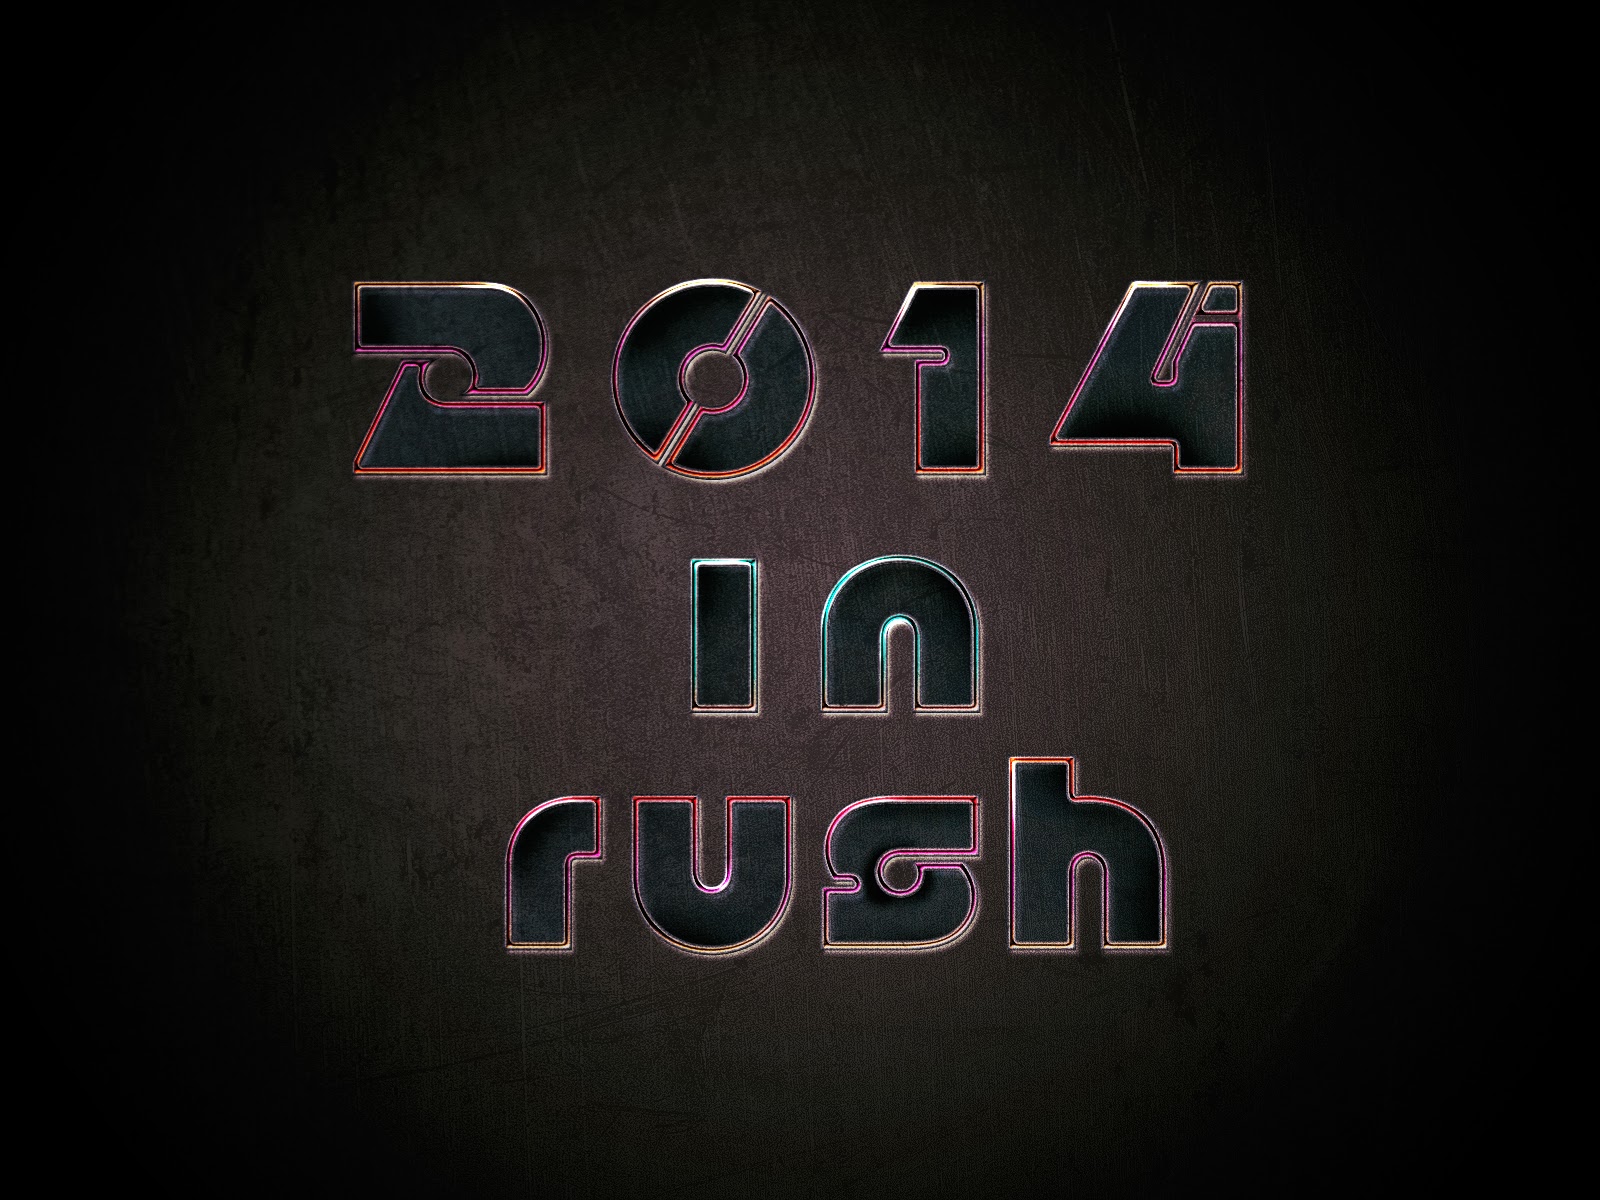 2014 in rush